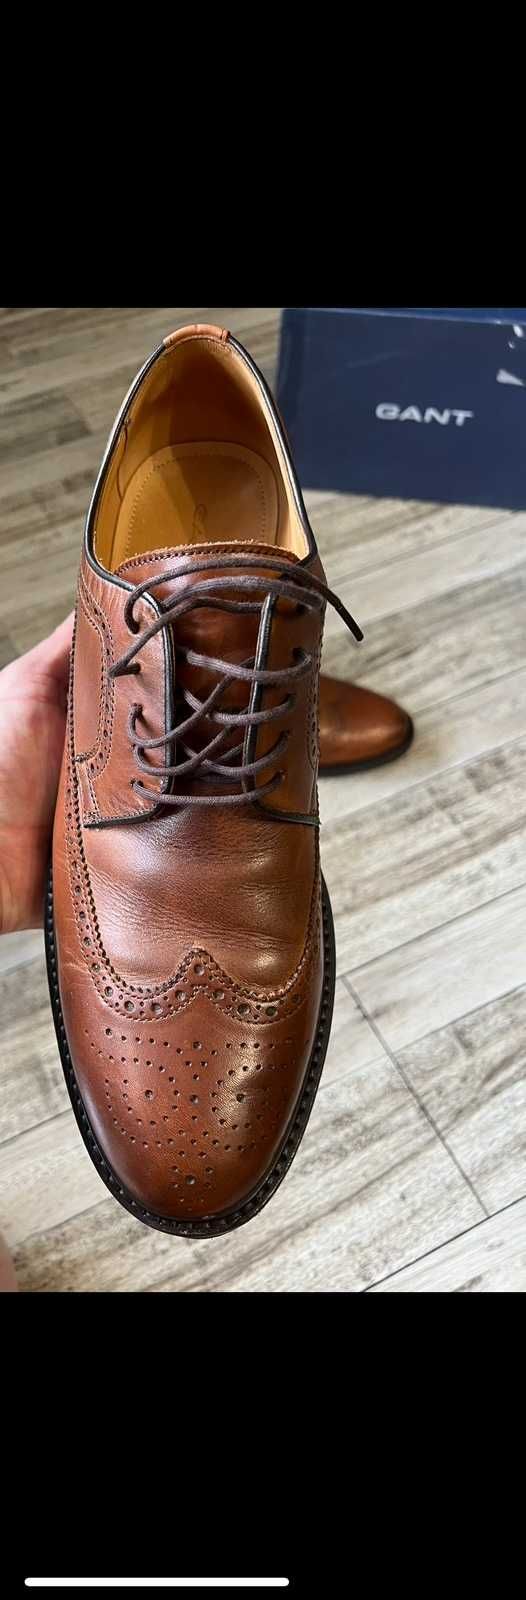 Кожаные туфли Gant Millbro